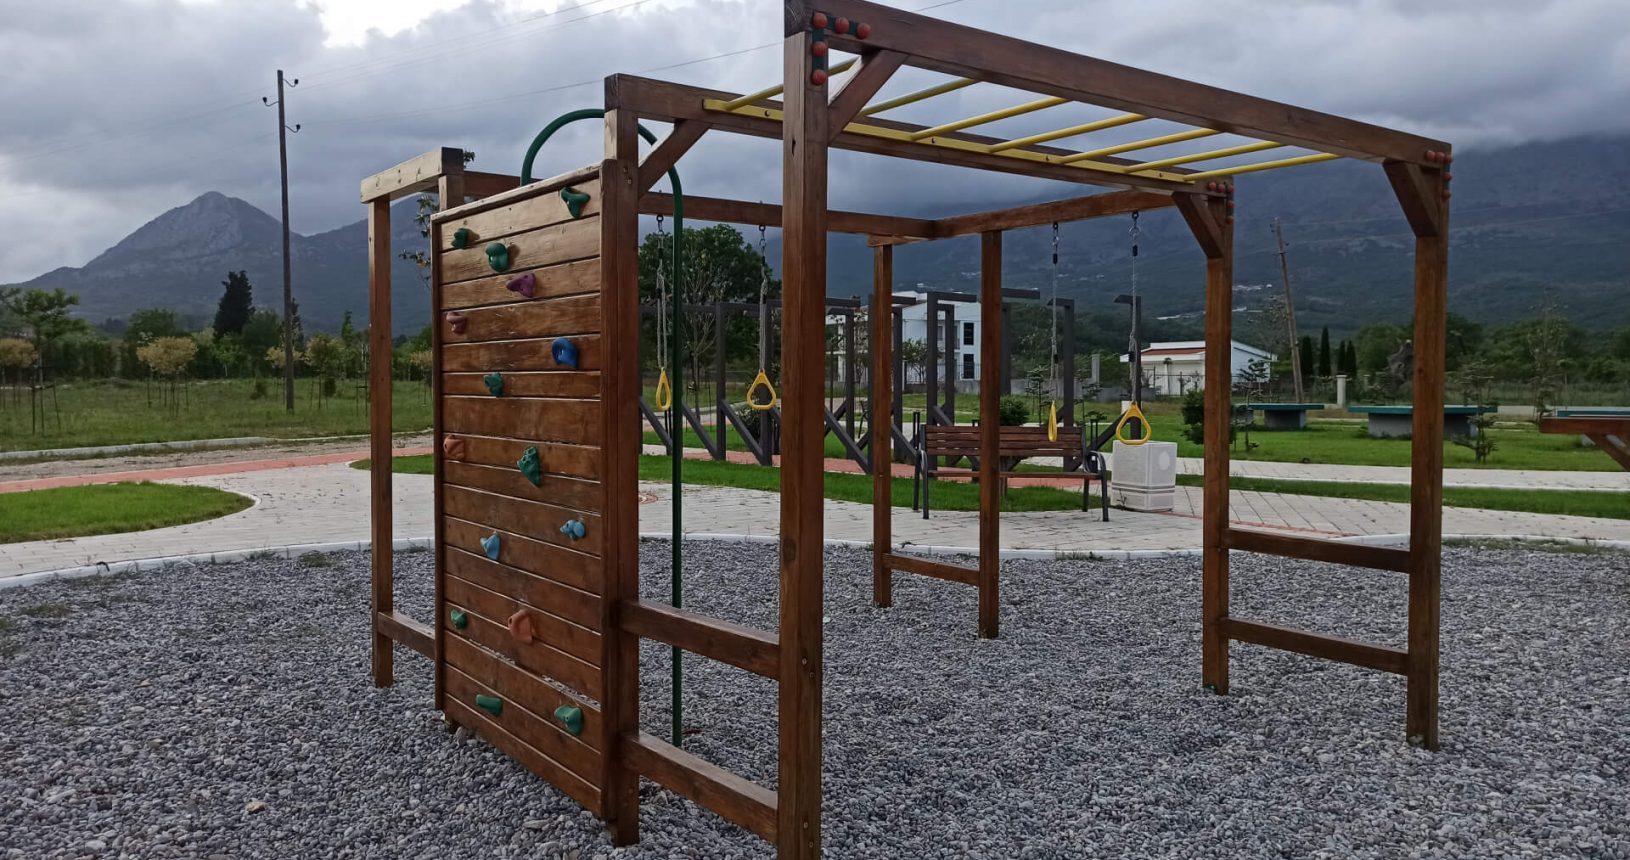 Playground for exercises for kids. Hajdari Family Public Park